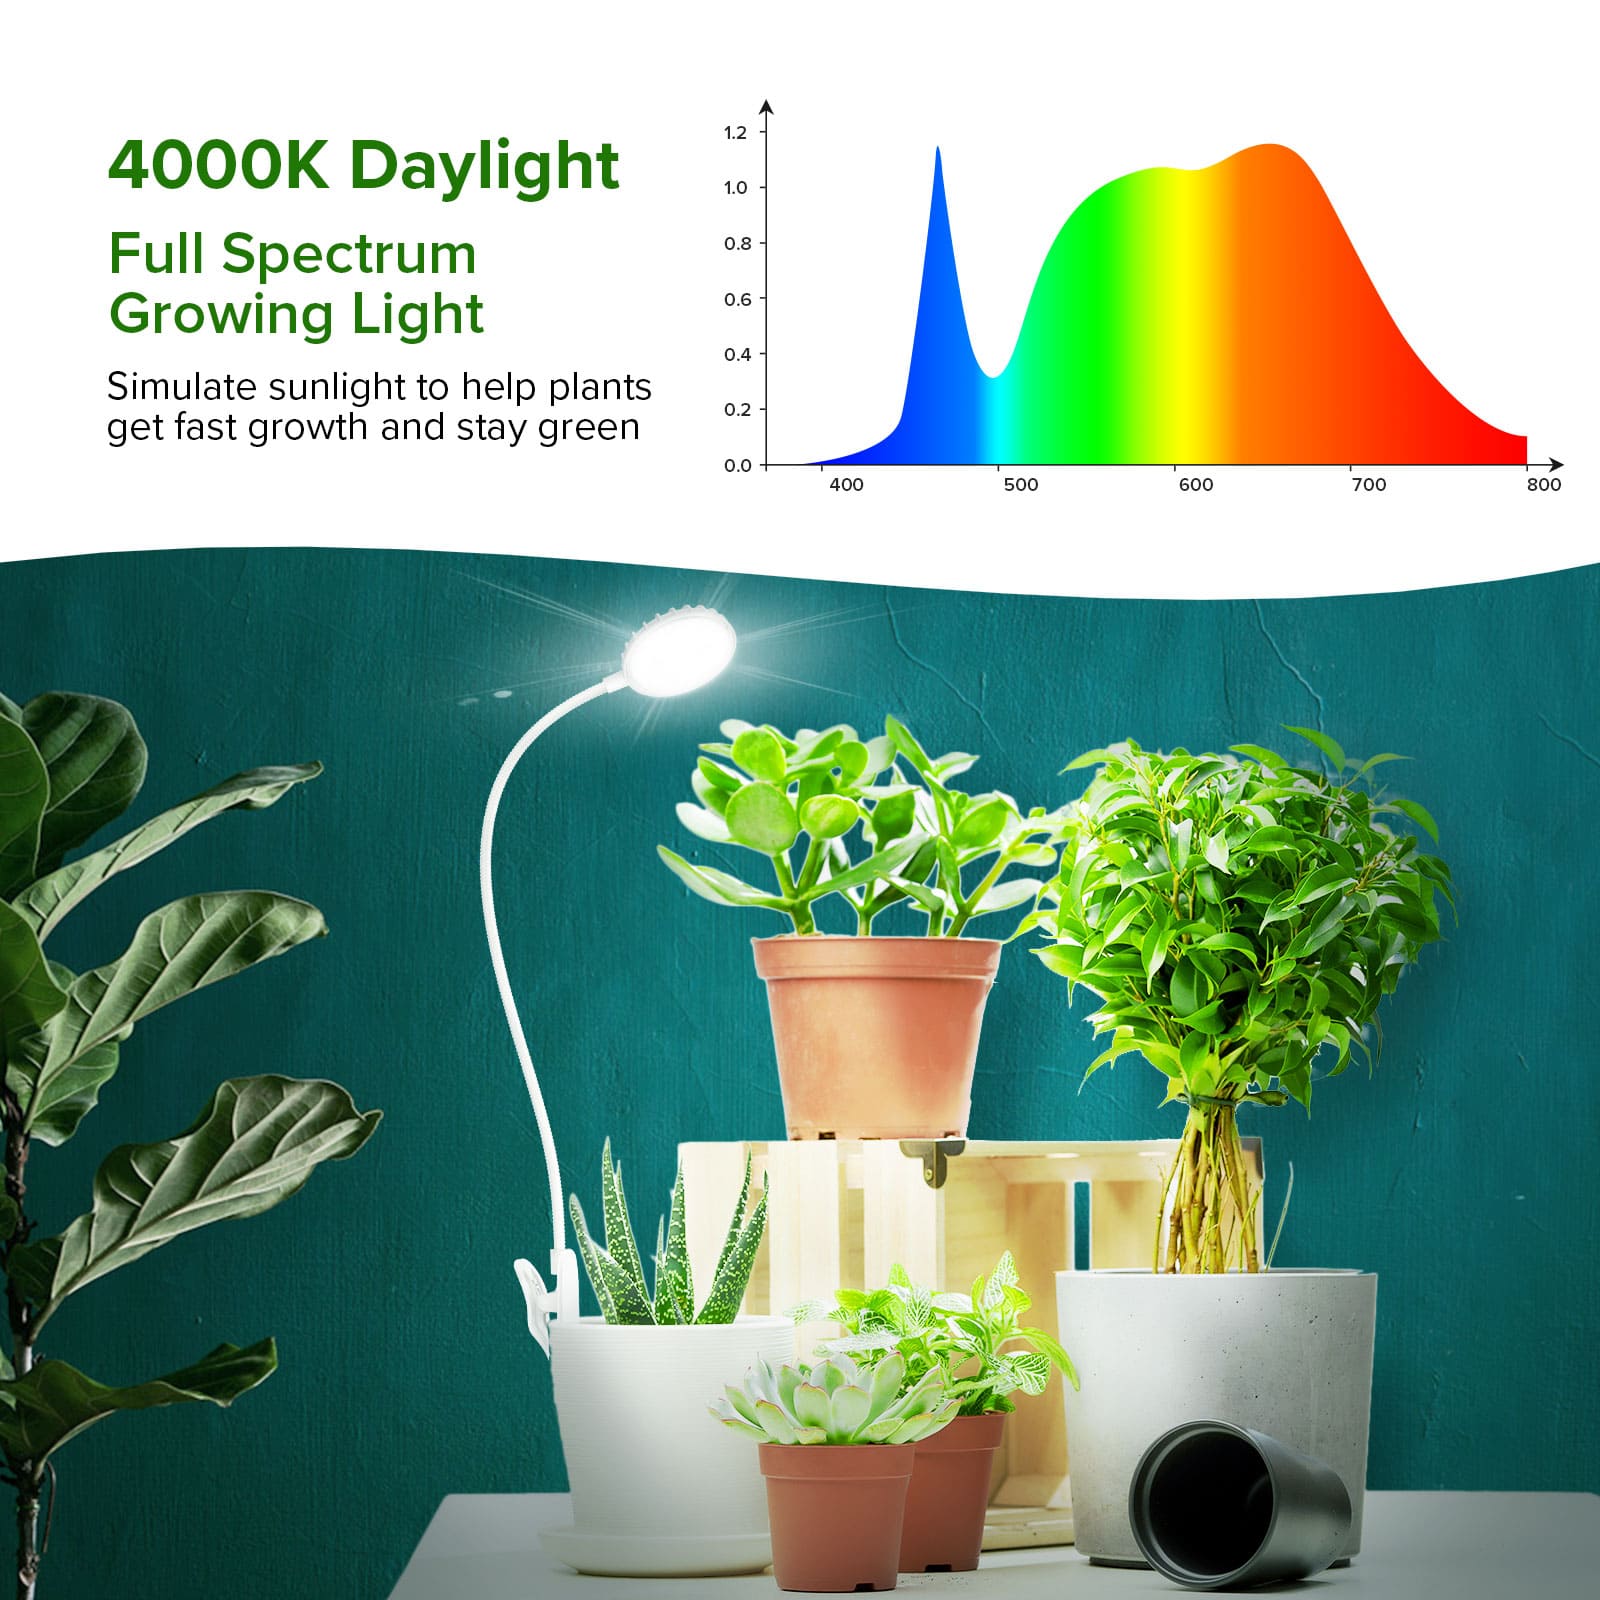 4000K Daylight,Full Spectrum Growing Light.